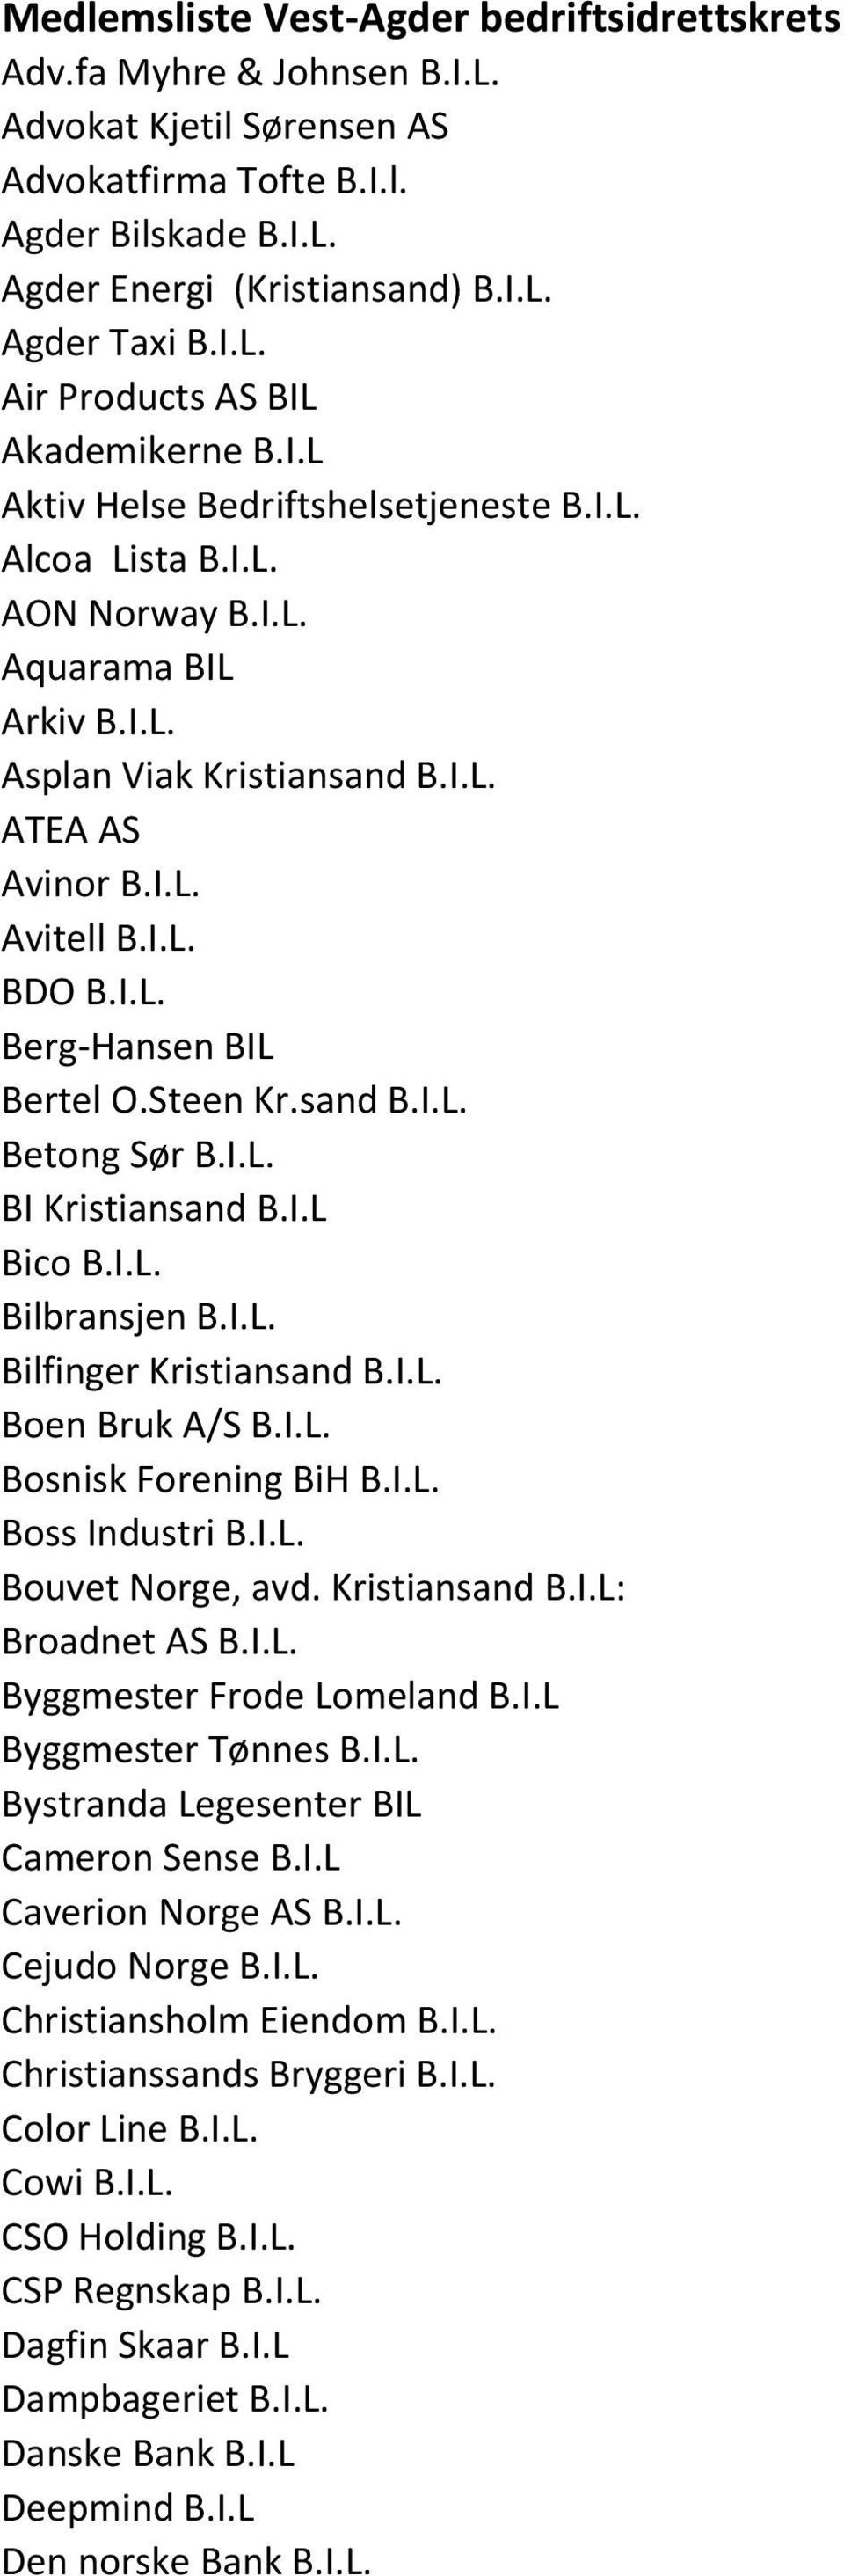 I.L. BI Kristiansand B.I.L Bico B.I.L. Bilbransjen B.I.L. Bilfinger Kristiansand B.I.L. Boen Bruk A/S B.I.L. Bosnisk Forening BiH B.I.L. Boss Industri B.I.L. Bouvet Norge, avd. Kristiansand B.I.L: Broadnet AS B.